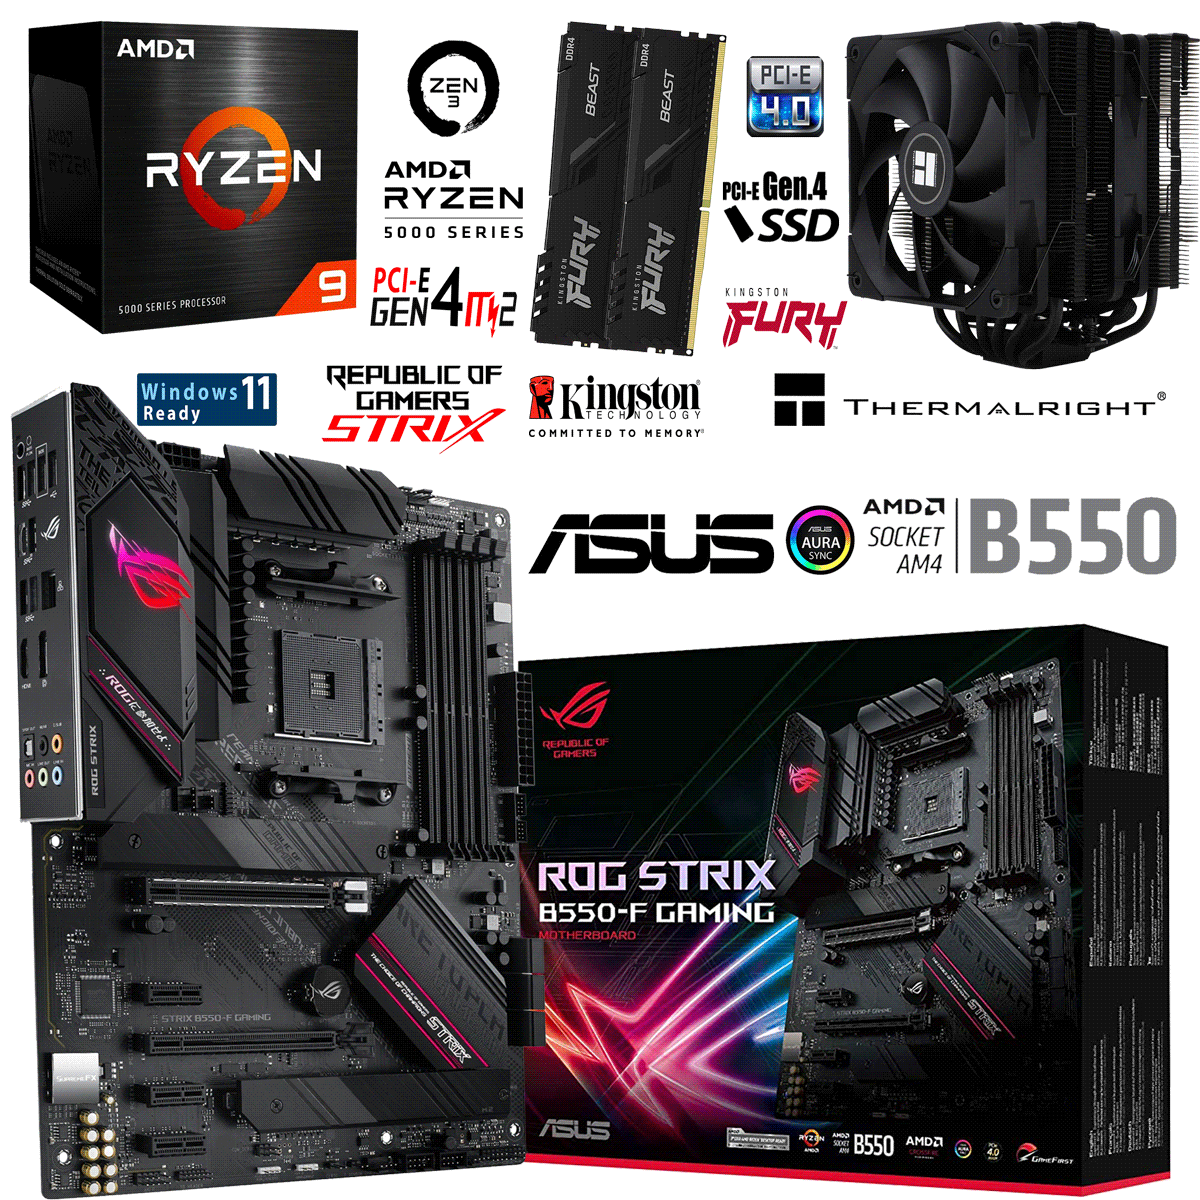 PC Bundle • AMD Ryzen 9 5900X • Asus Rog Strix B550-F Gaming • 16GB DDR4-3200 Ram